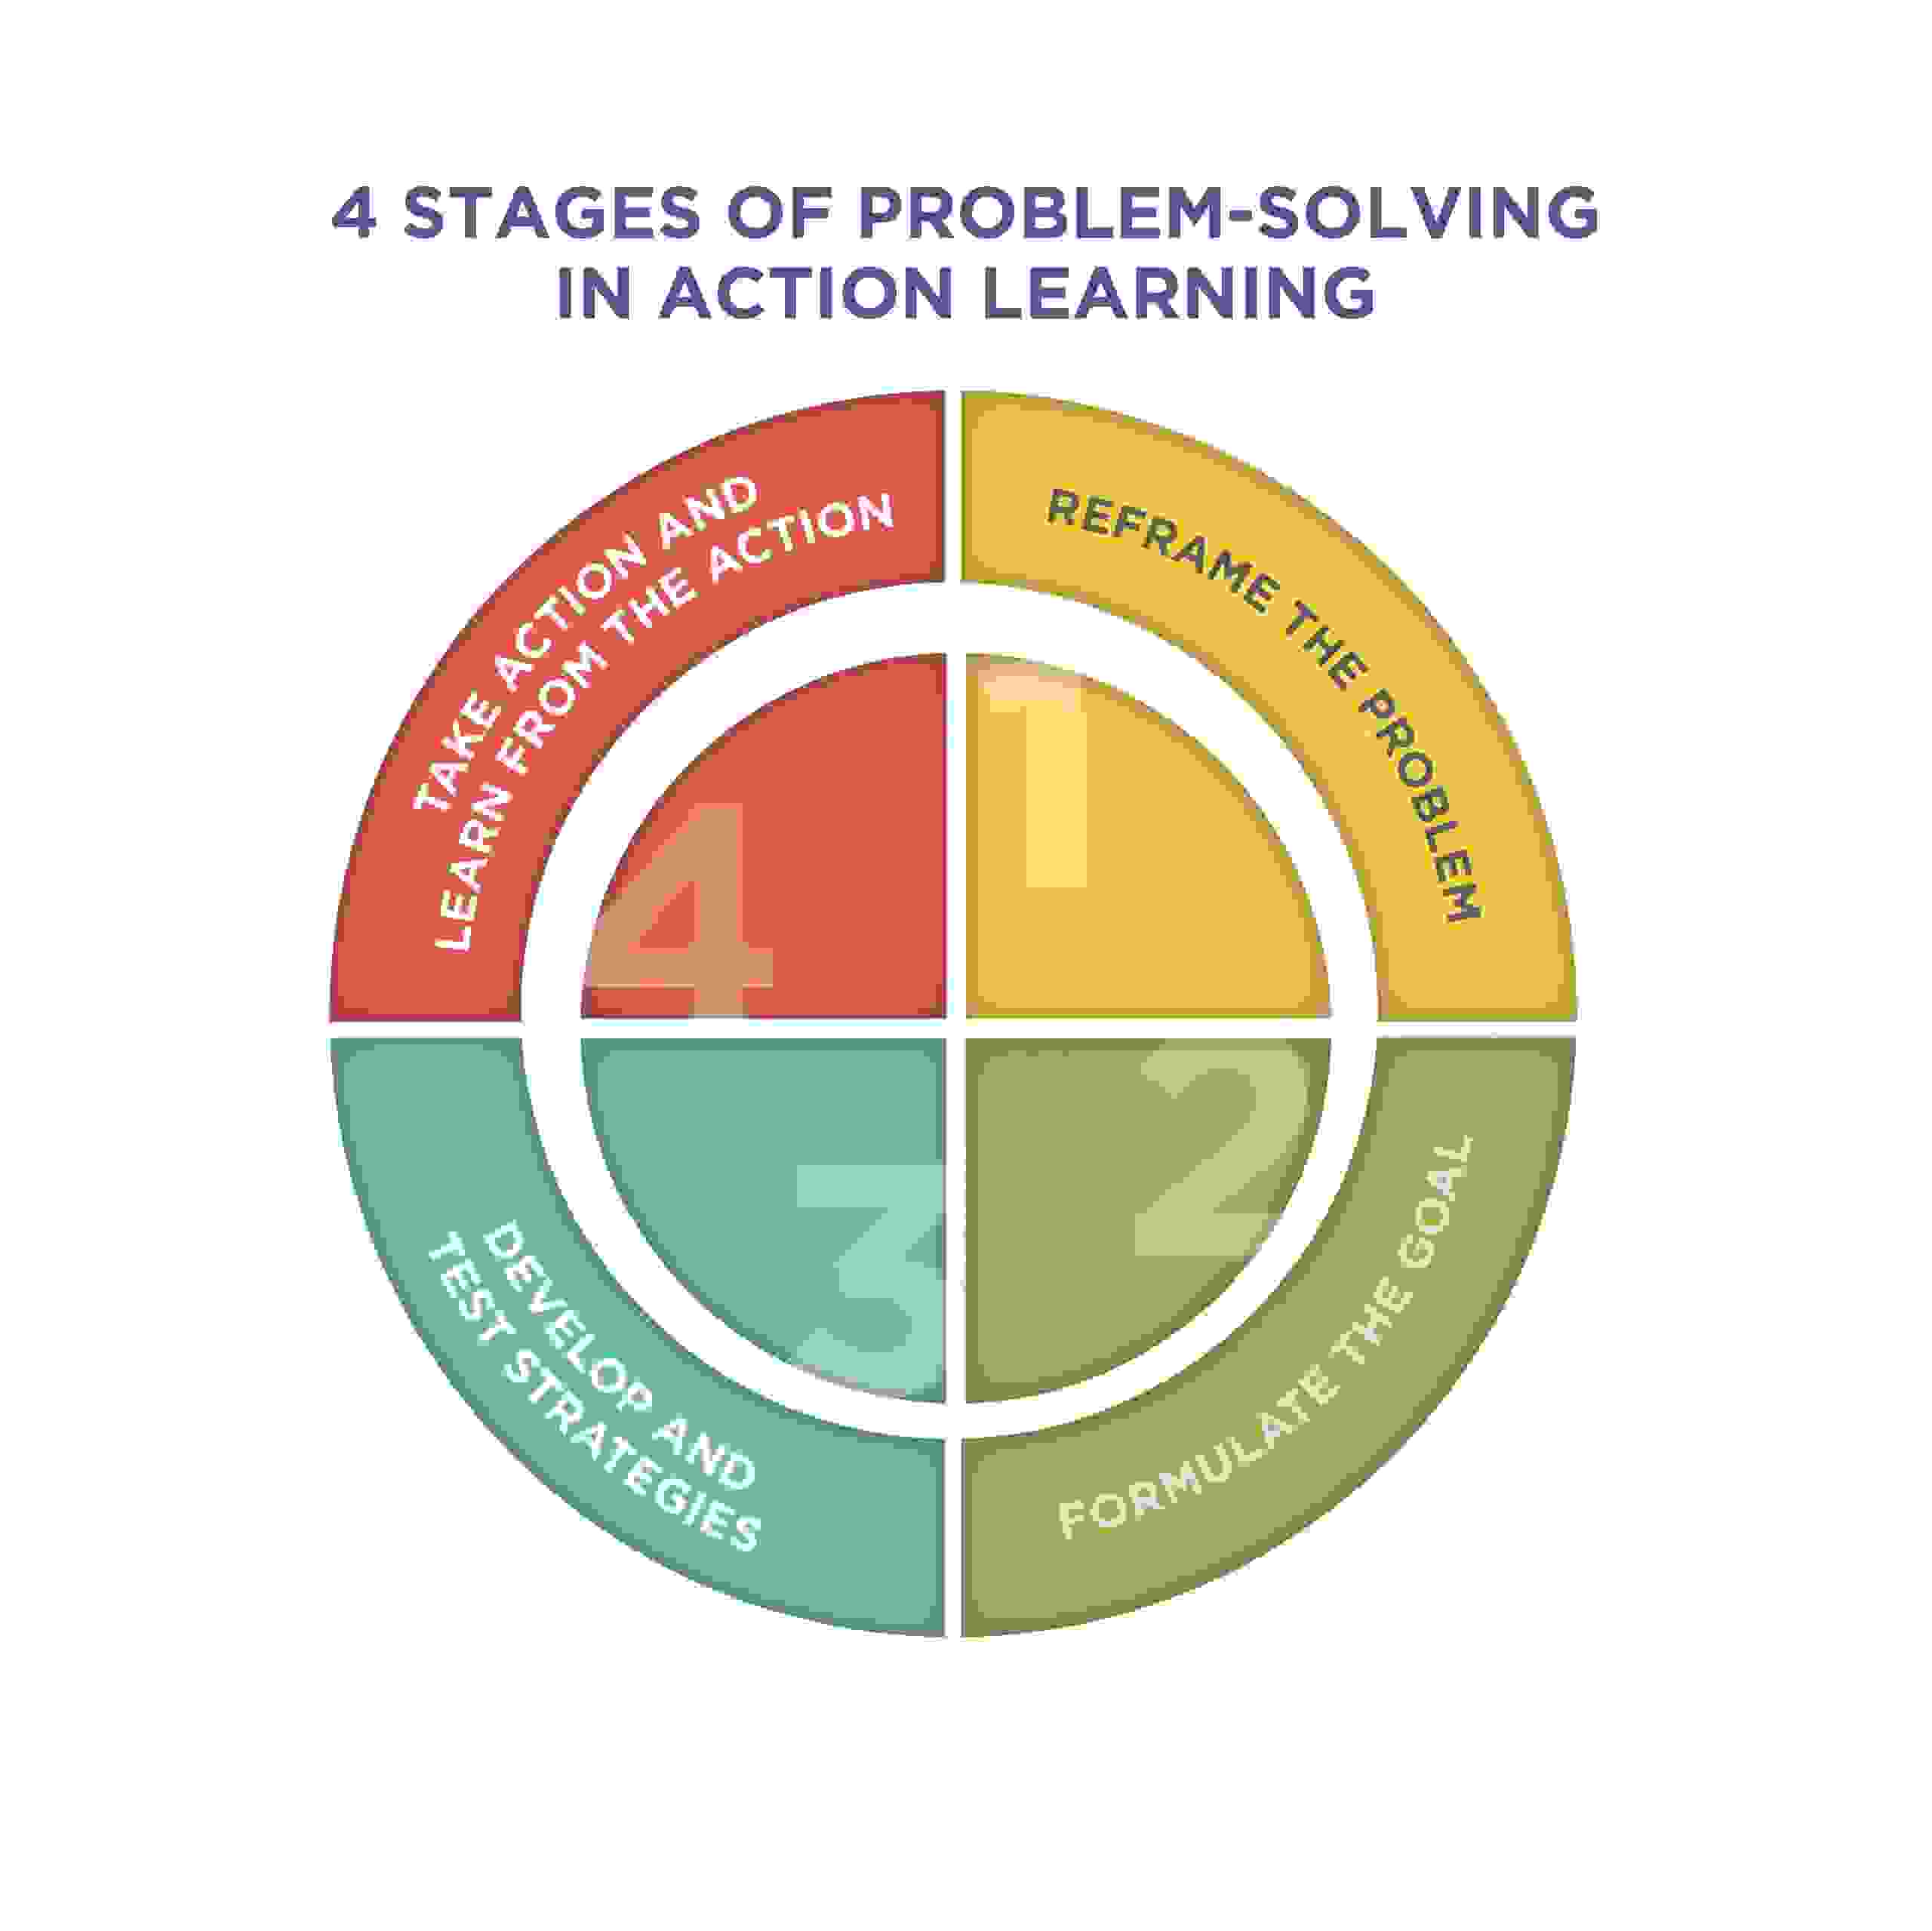 Action Learning - Action Learning, Action Learning, Educational